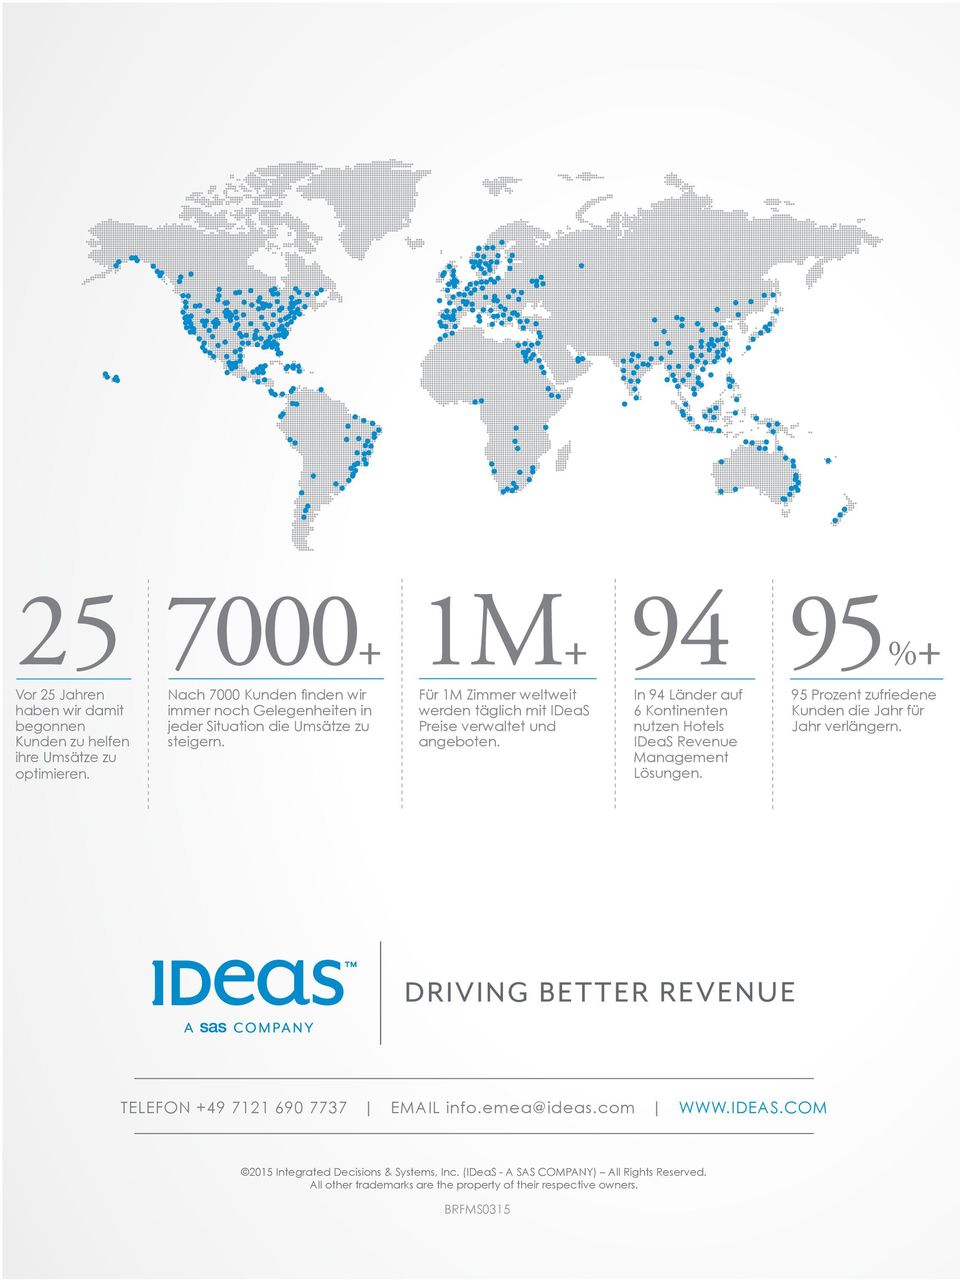 Für 1M Zimmer weltweit werden täglich mit IDeaS Preise verwaltet und angeboten. In 94 Länder auf 6 Kontinenten nutzen Hotels IDeaS Revenue Management Lösungen.